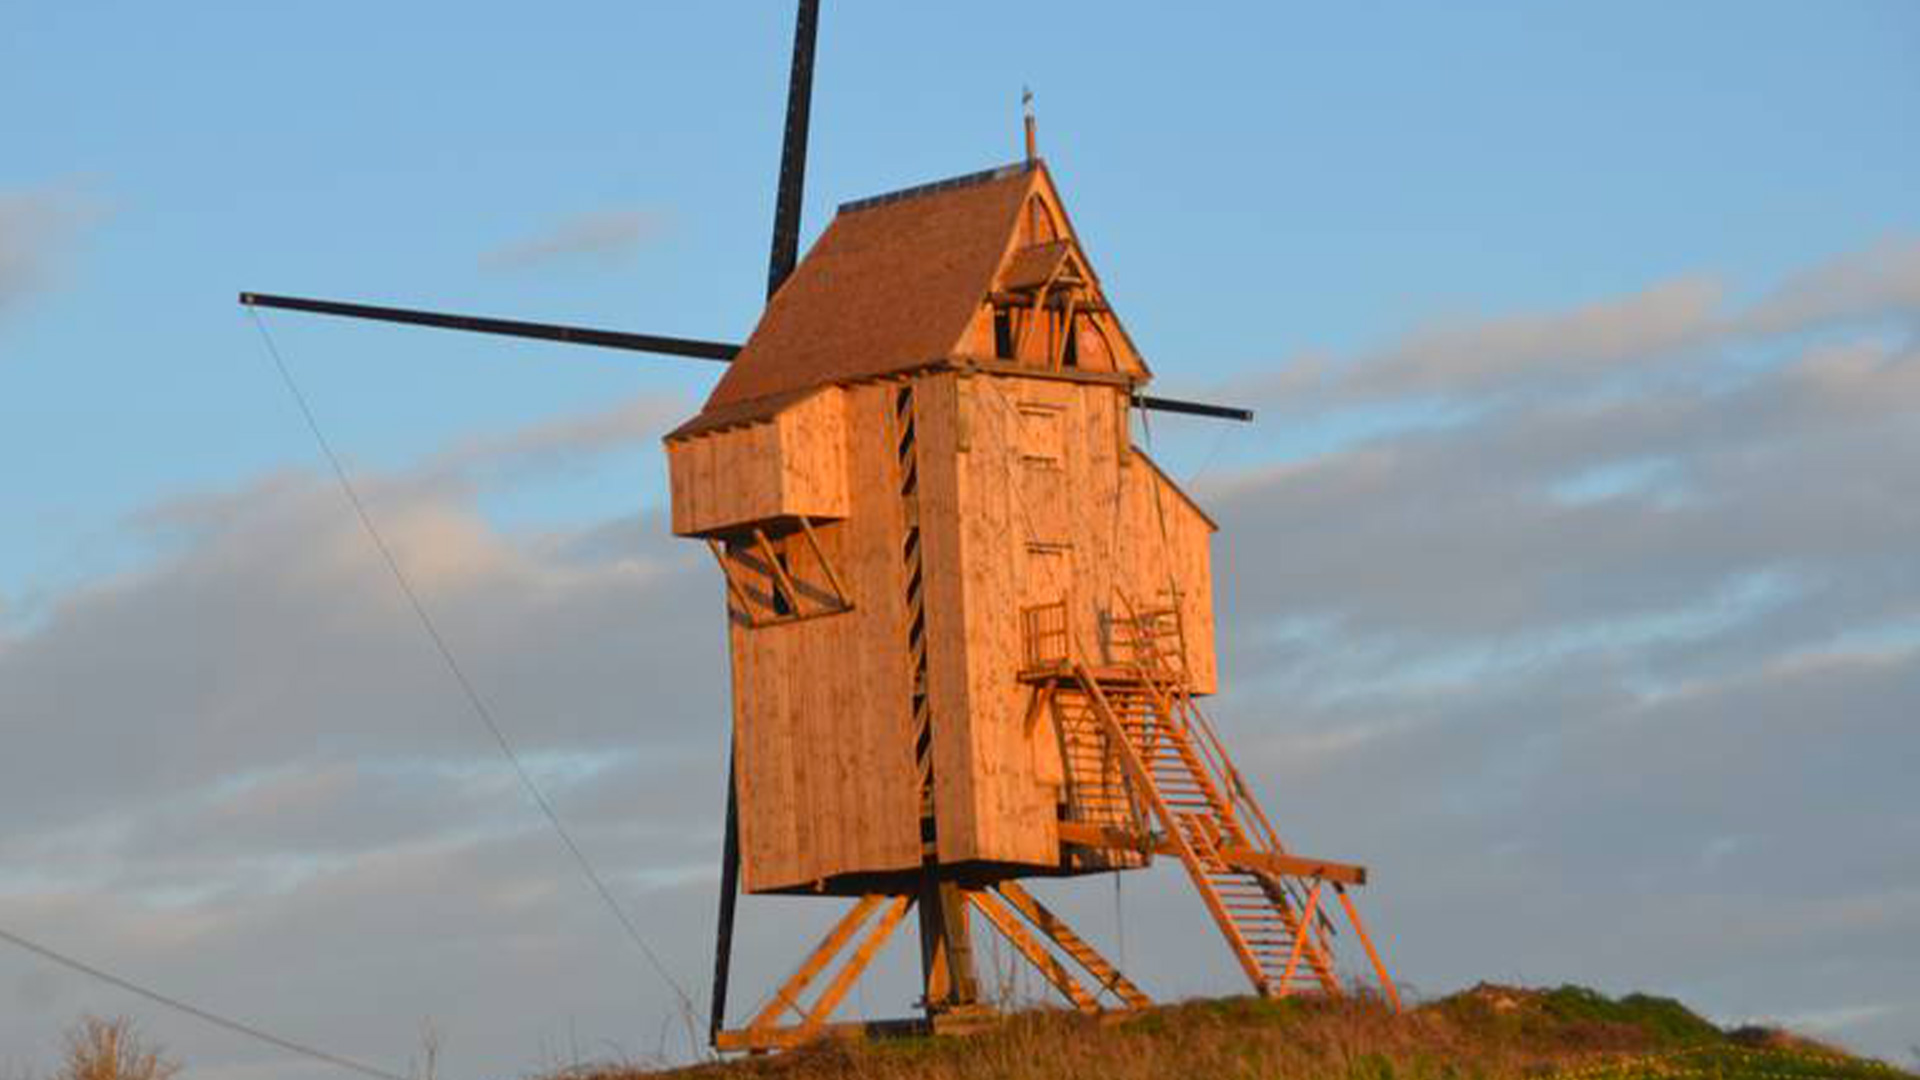 Cliquez ici pour en savoir plus sur Moulin de Thimougies (Tournai)